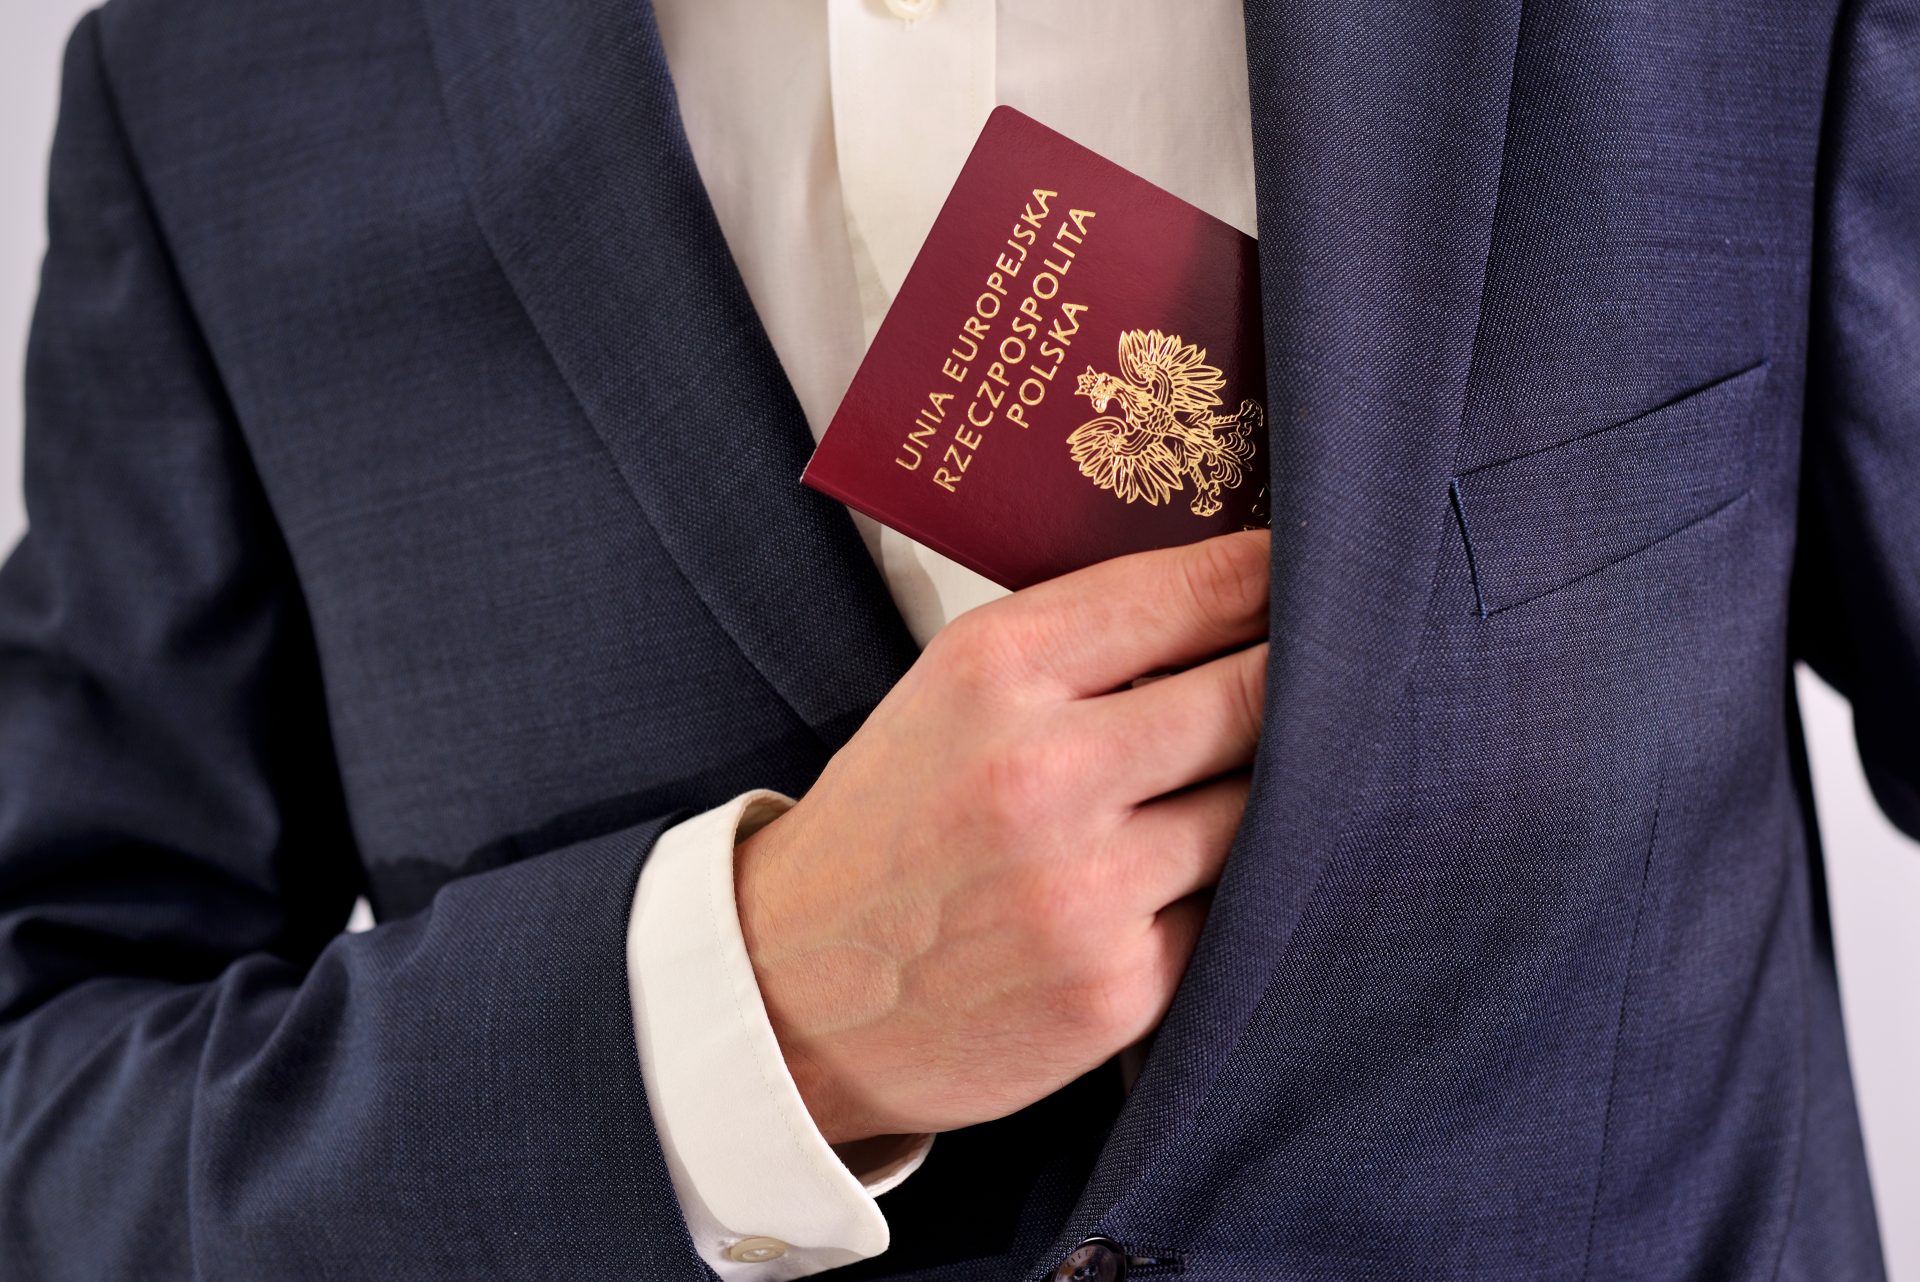 Jak wyrobić paszport?